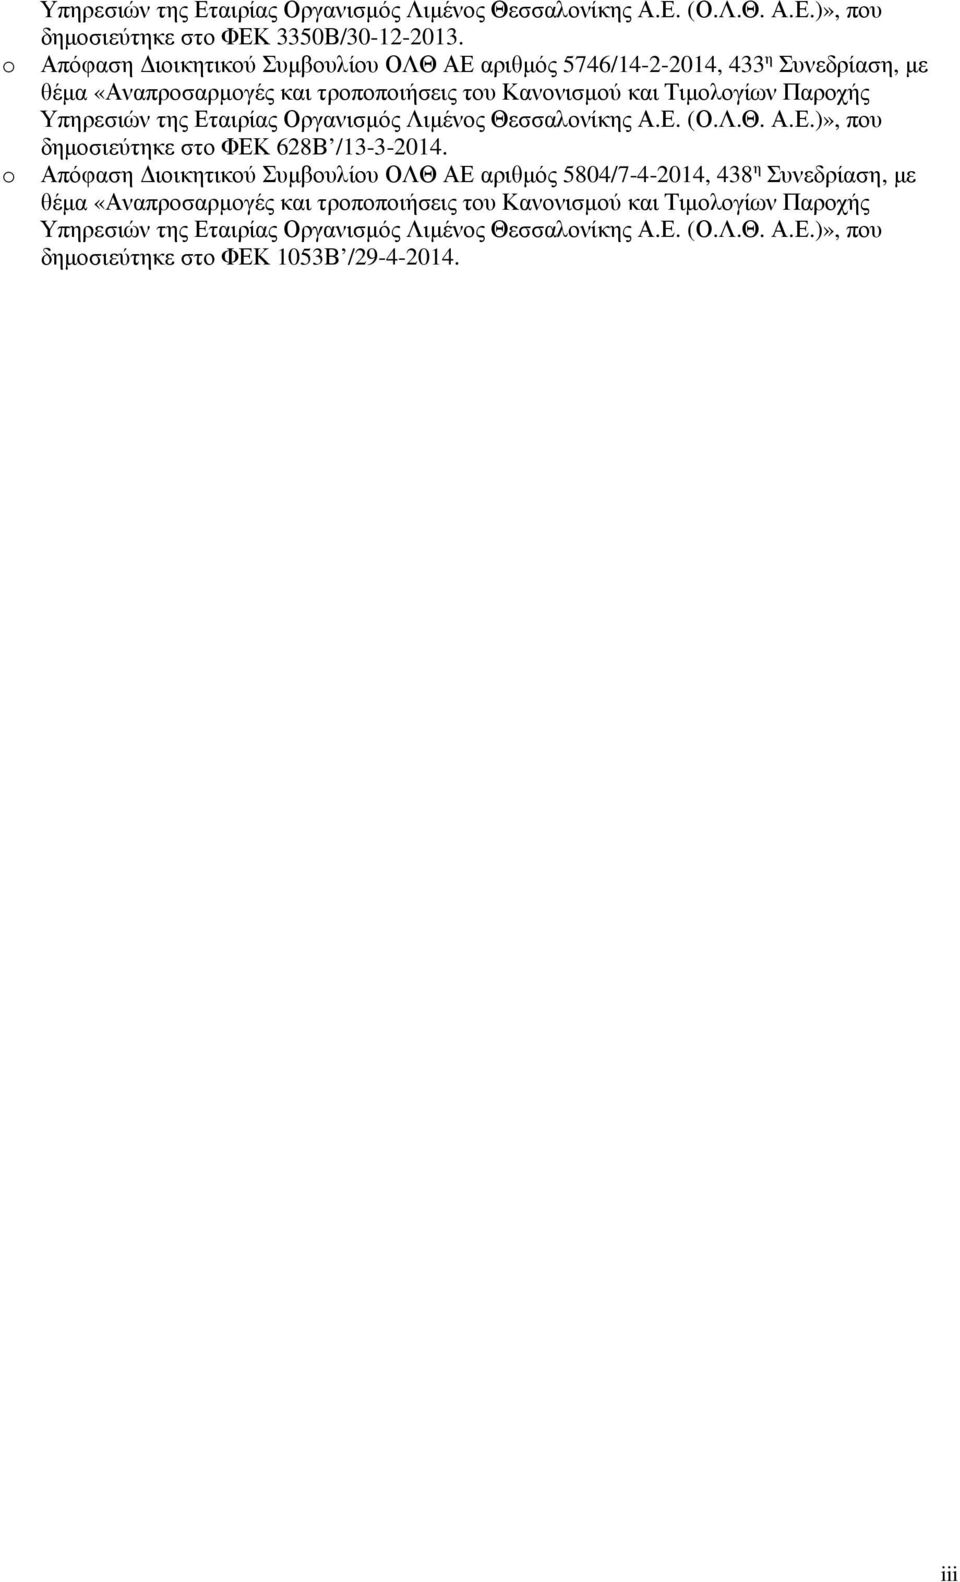 Υπηρεσιών της Εταιρίας Οργανισµός Λιµένος Θεσσαλονίκης Α.Ε. (Ο.Λ.Θ. Α.Ε.)», που δηµοσιεύτηκε στο ΦΕΚ 628Β /13-3-2014.